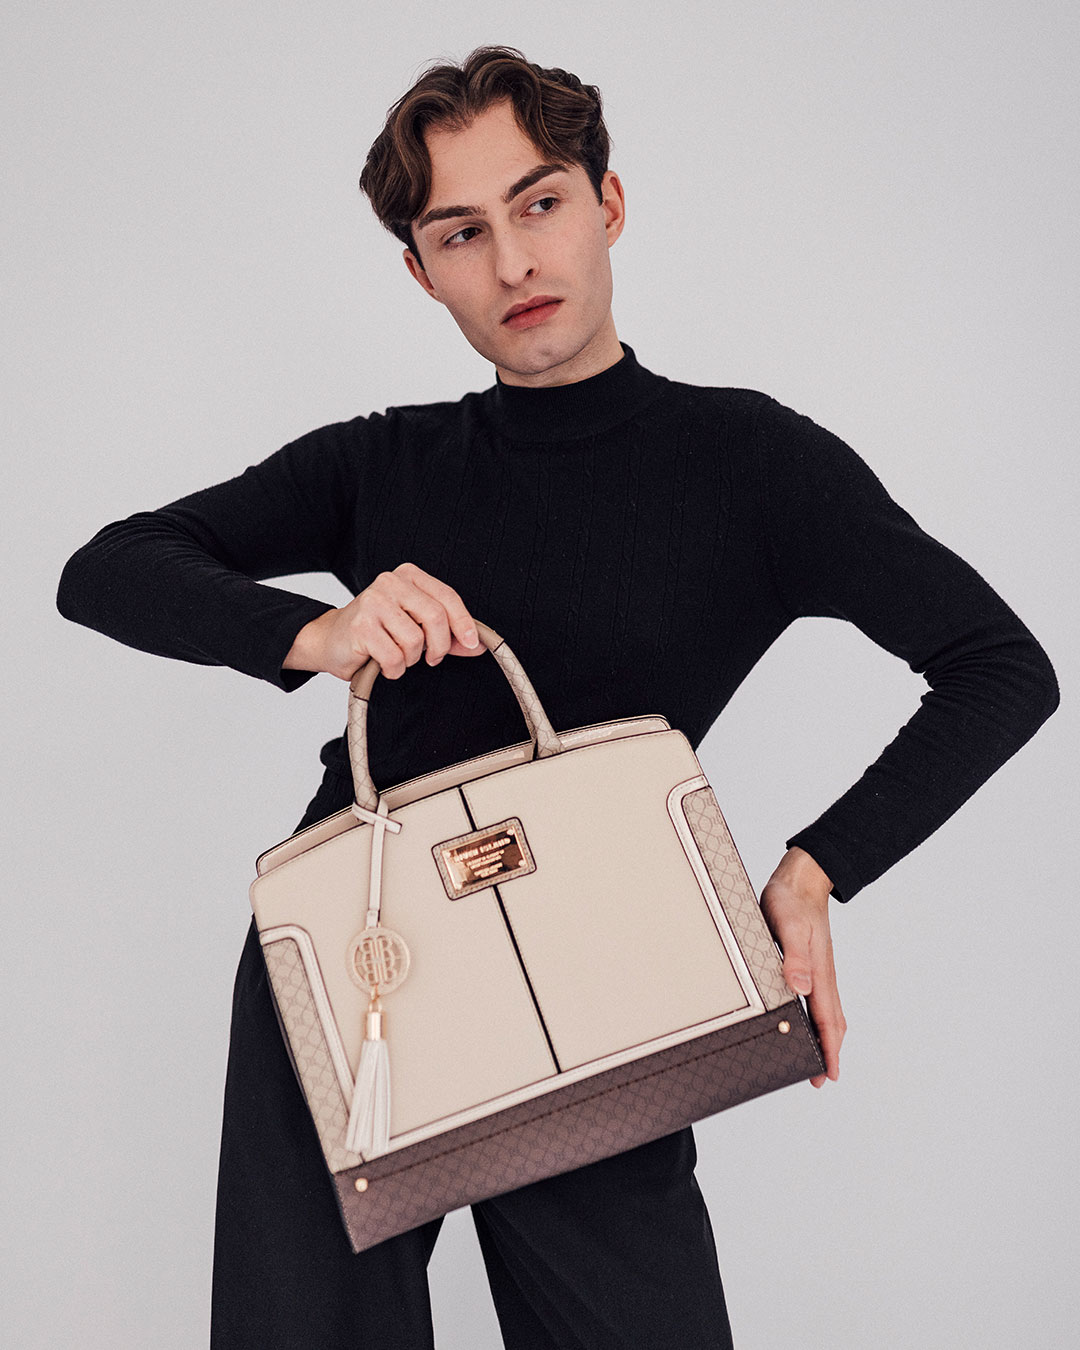 Designertaschen und ihre günstigen Alternativen: Hermès Handtasche.